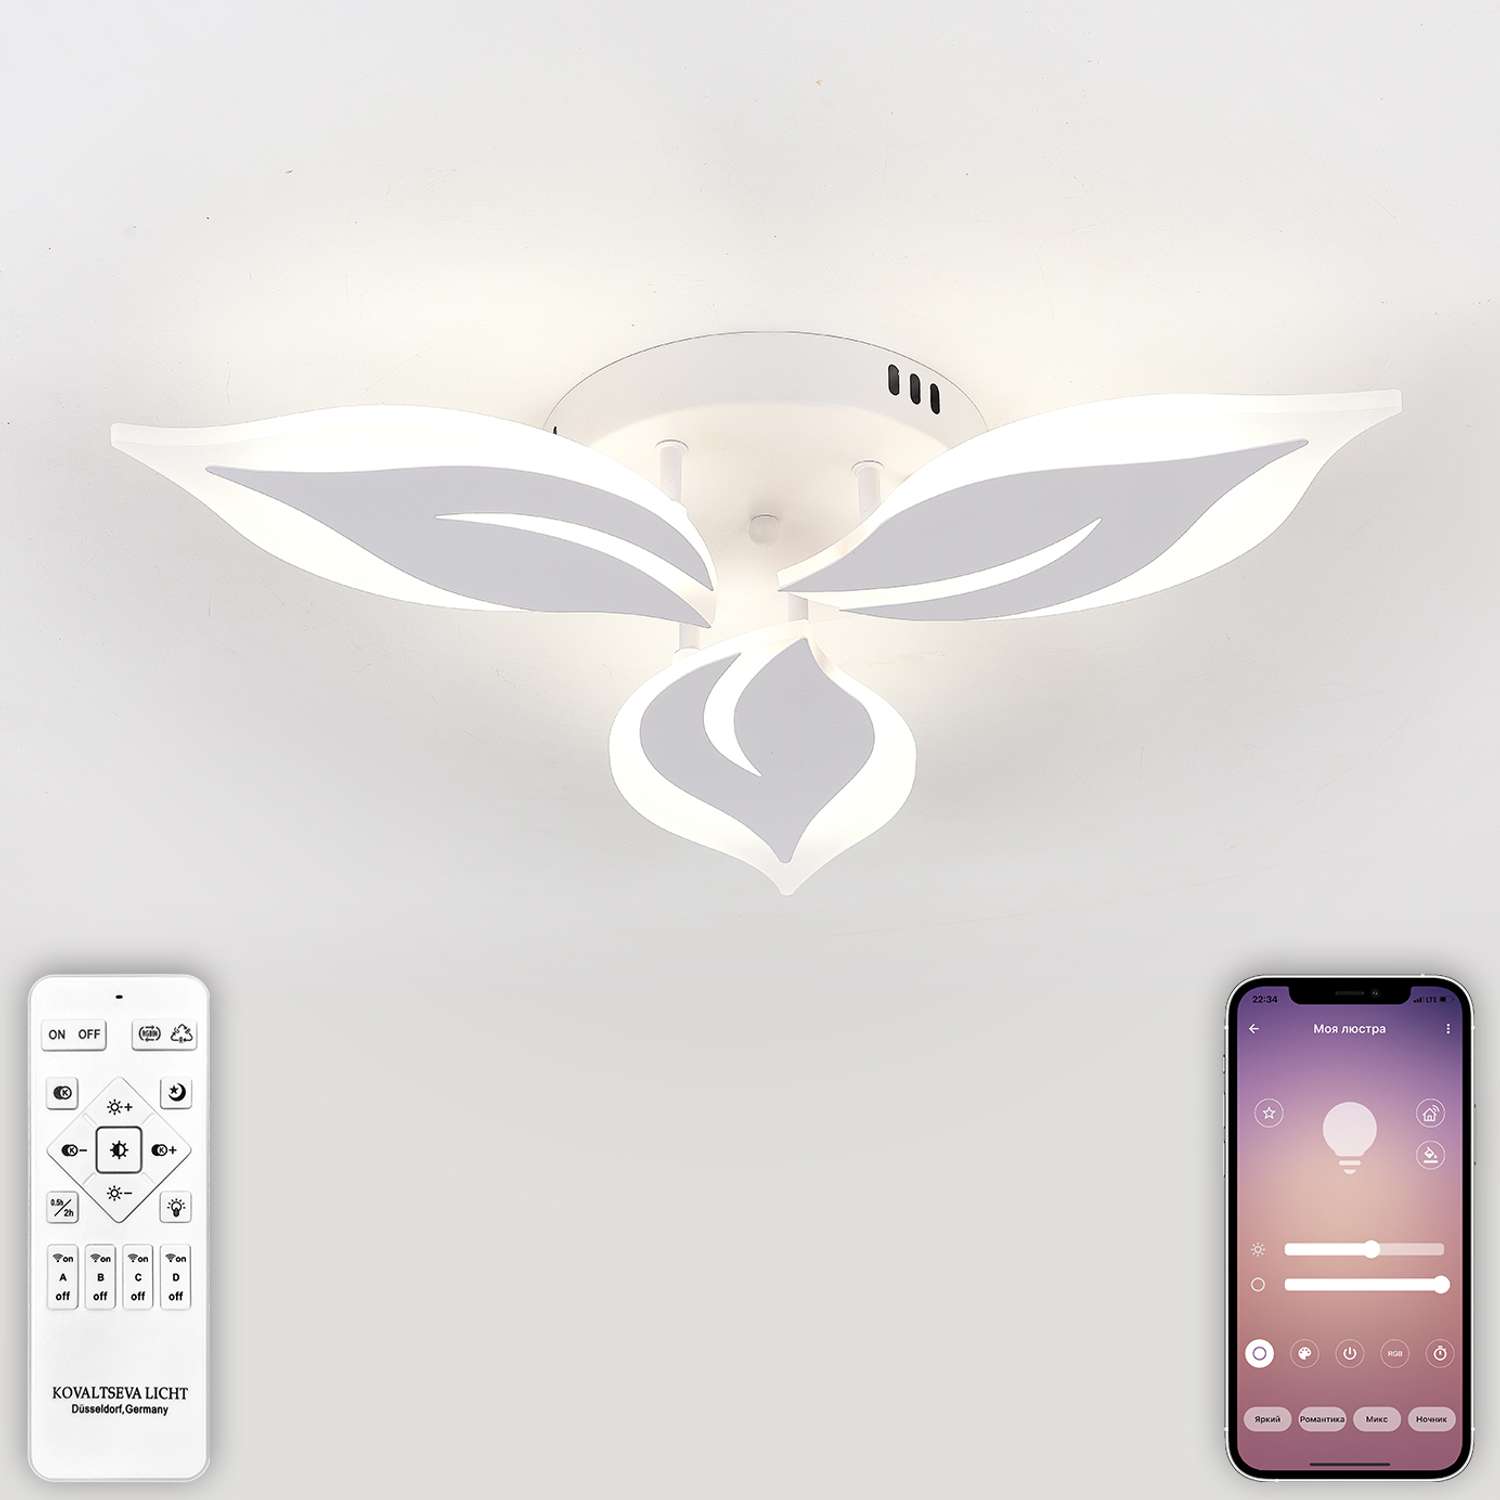 Светодиодный светильник NATALI KOVALTSEVA люстра 48W белый LED - фото 1